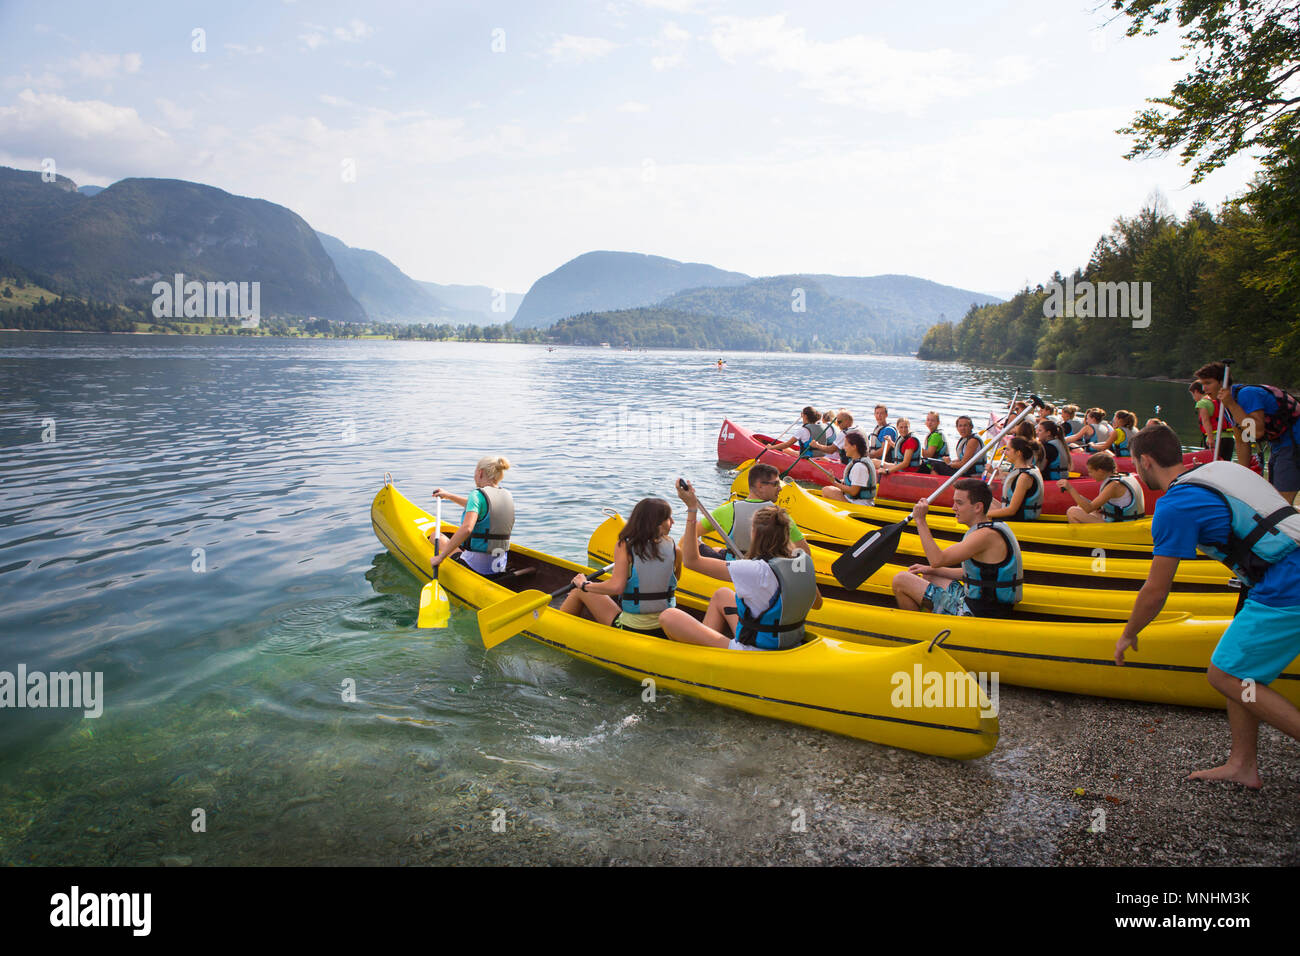 Los adultos jóvenes de clase están entrando en el agua de lago de Bohinj con canoas, el mayor lago permanente situado en el valle de Bohinj Alpes Julianos, el Parque Nacional de Triglav, en Eslovenia Foto de stock